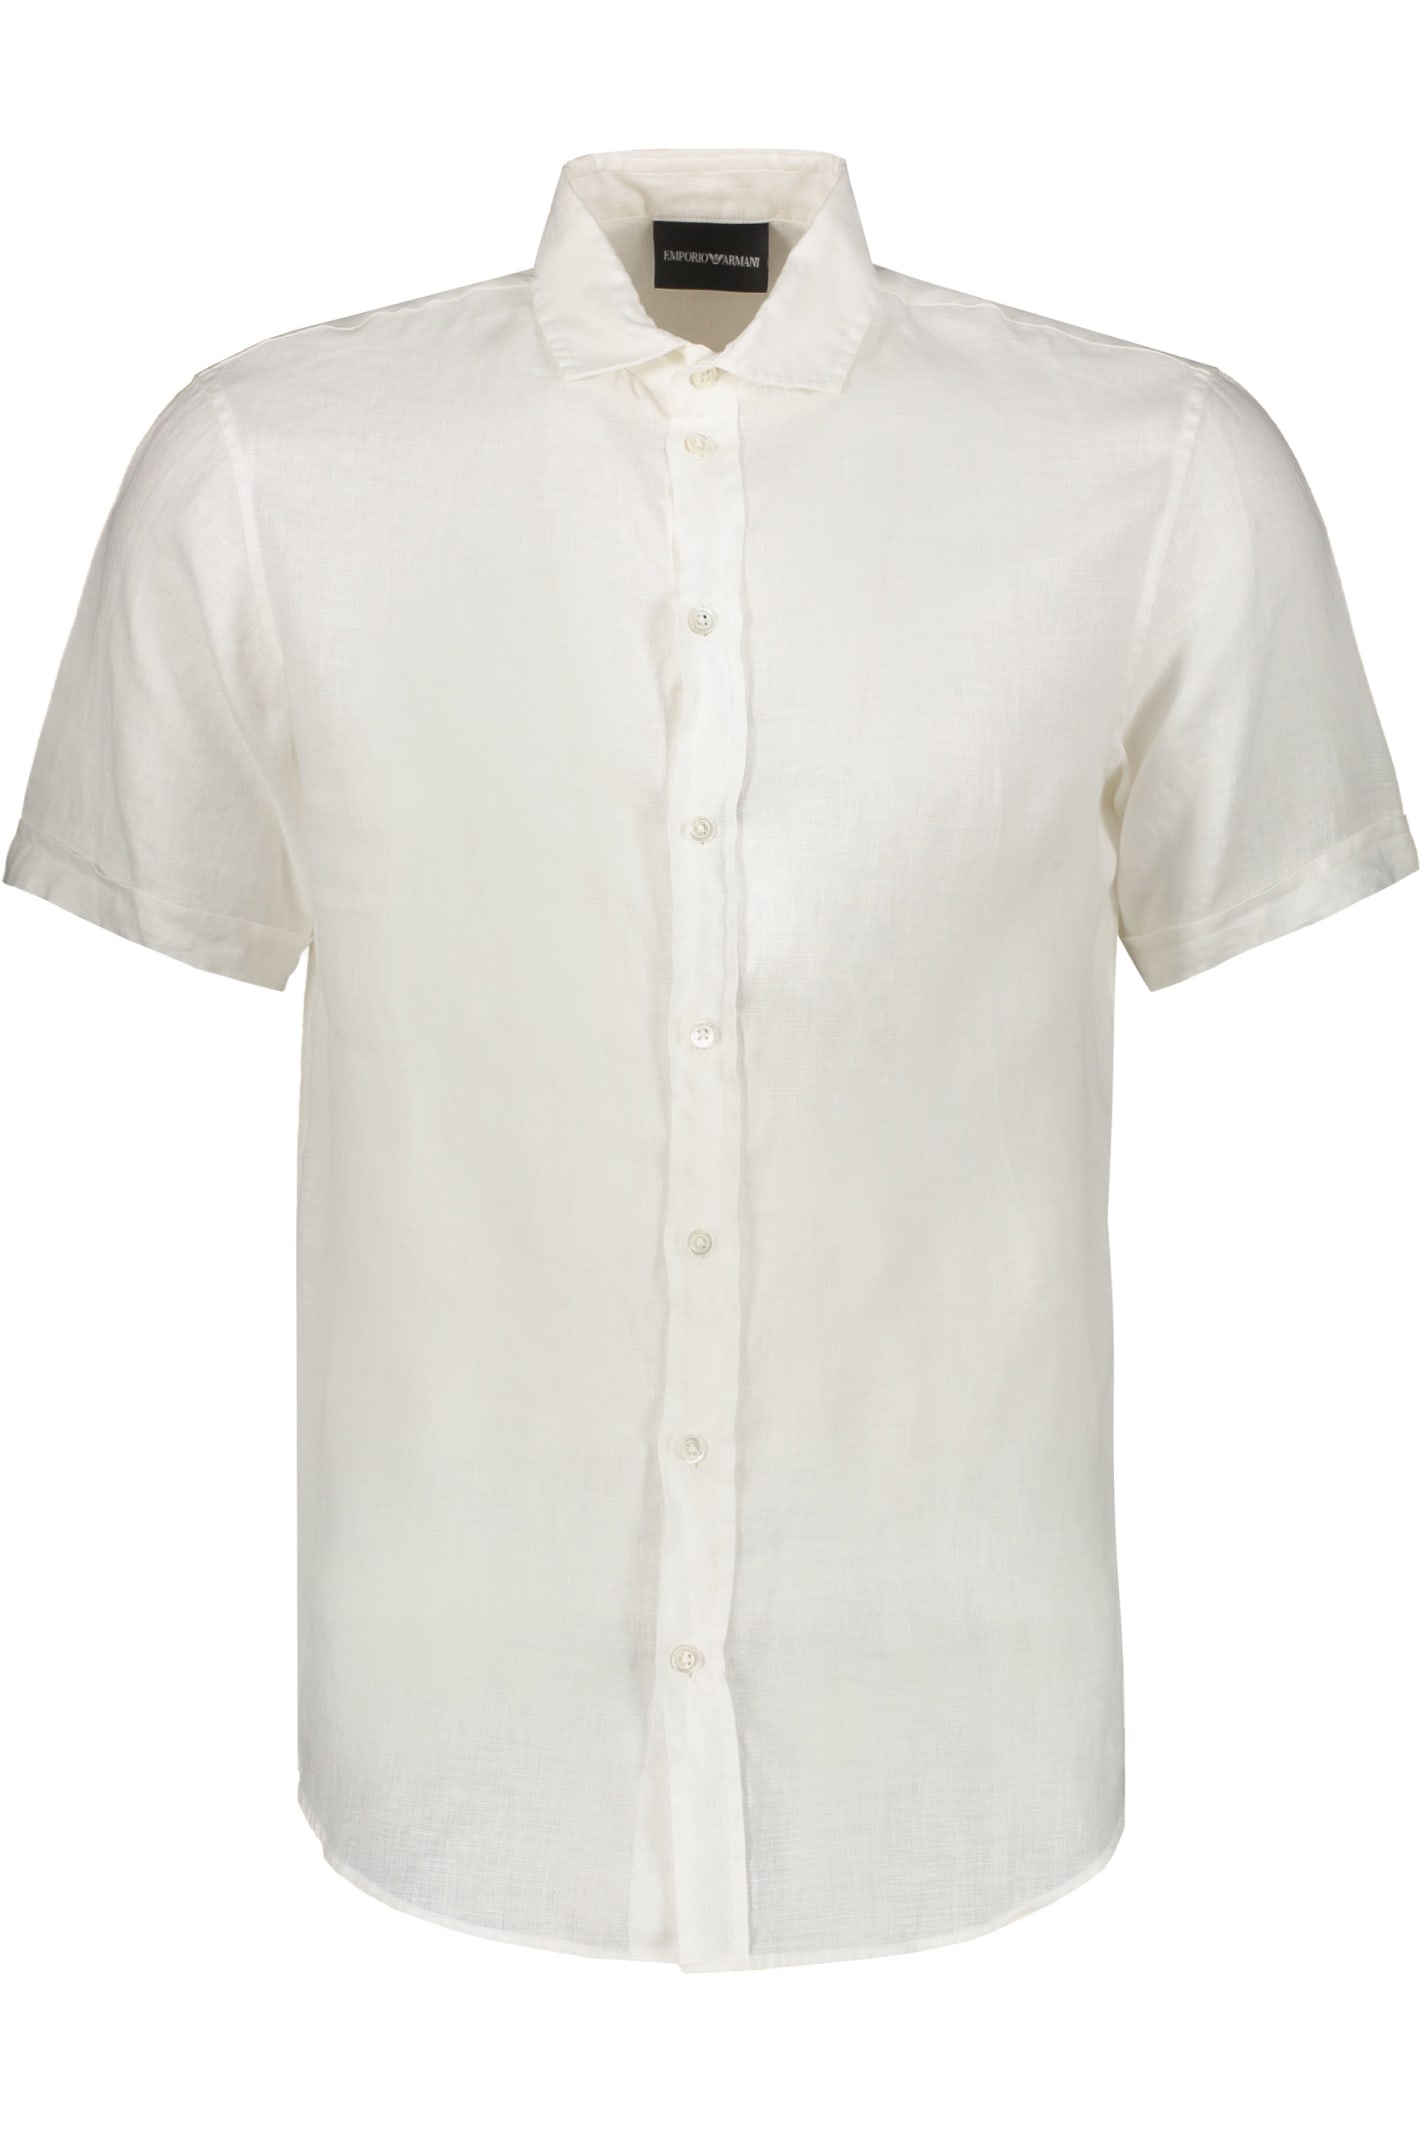 Emporio Armani Linen Shirt In White